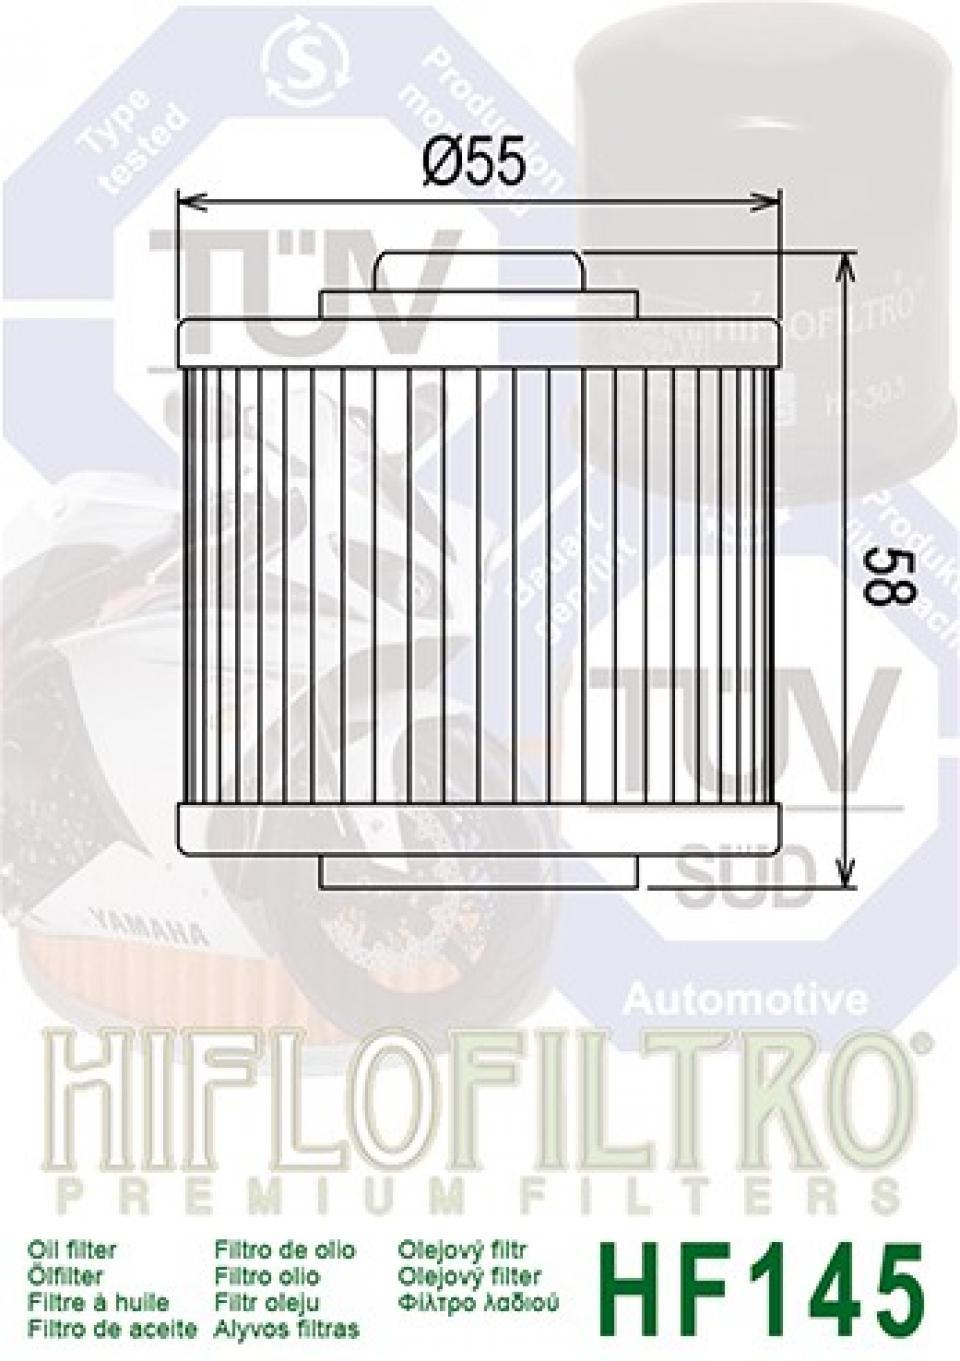 Filtre à huile Hiflofiltro pour Moto Yamaha 750 XTZ tenere 1990 à 1997 Neuf